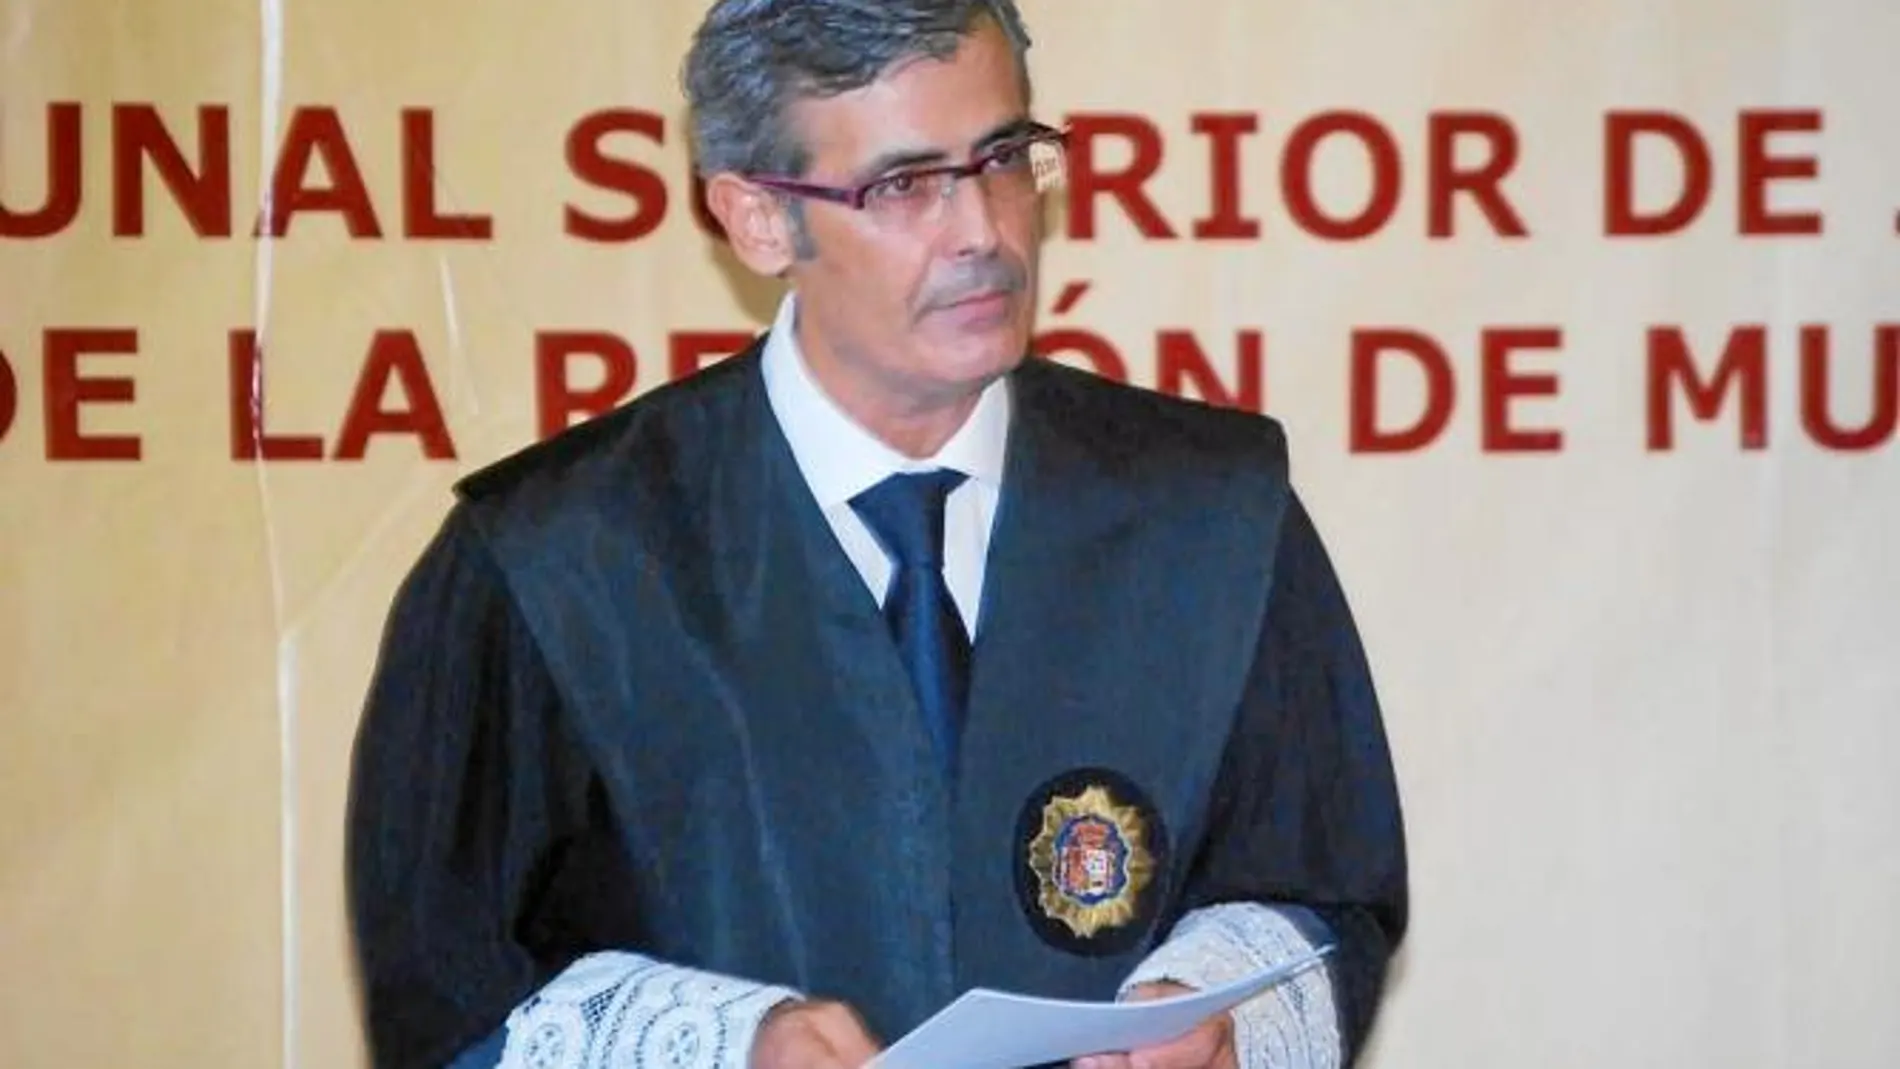 El presidente del Tribunal Superior de Justicia de Murcia, Martínez Moya